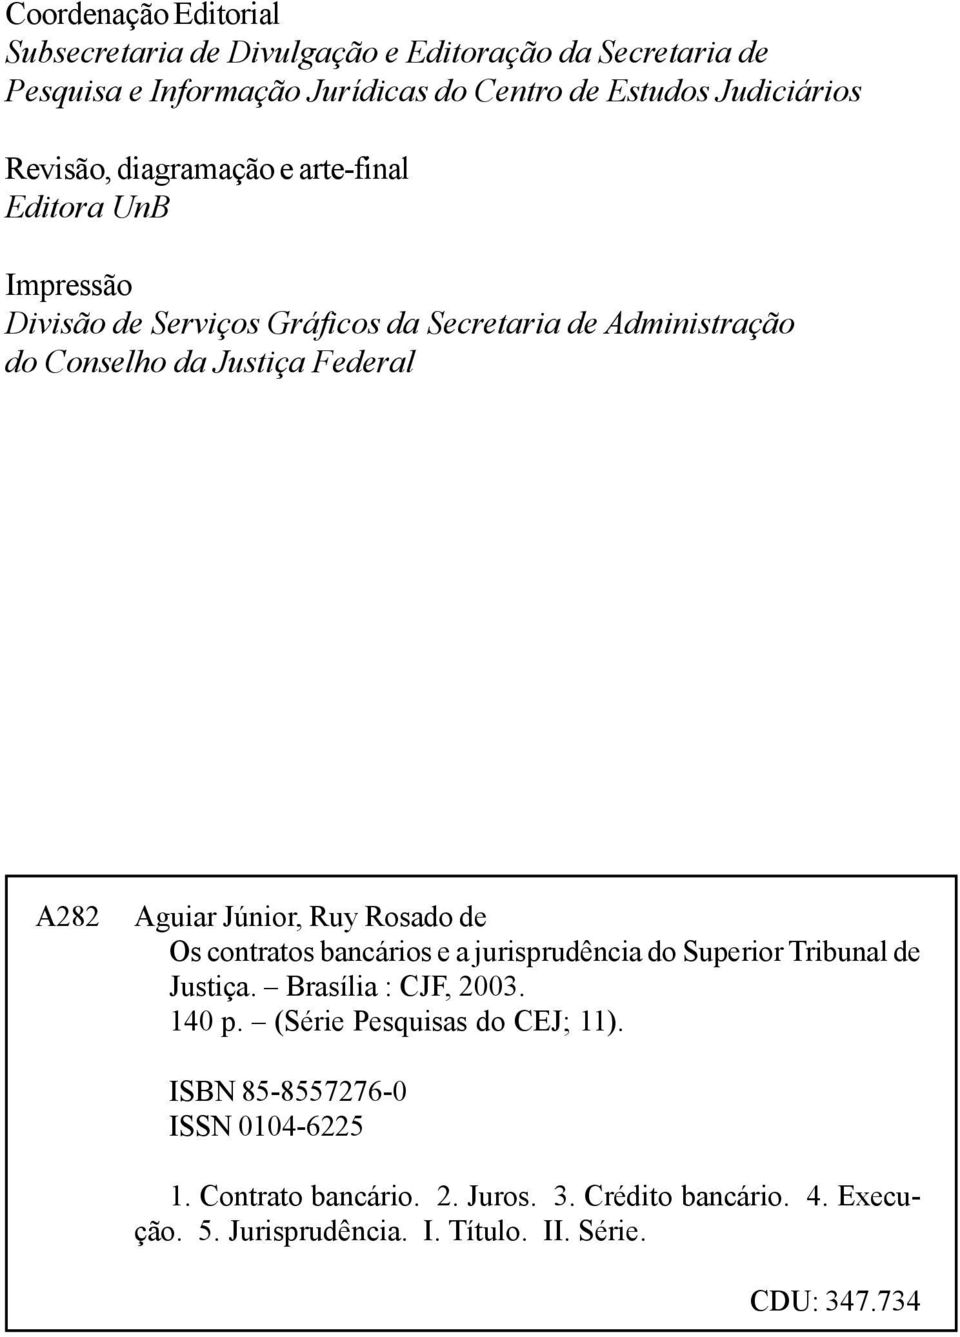 Aguiar Júnior, Ruy Rosado de Os contratos bancários e a jurisprudência do Superior Tribunal de Justiça. Brasília : CJF, 2003. 140 p.